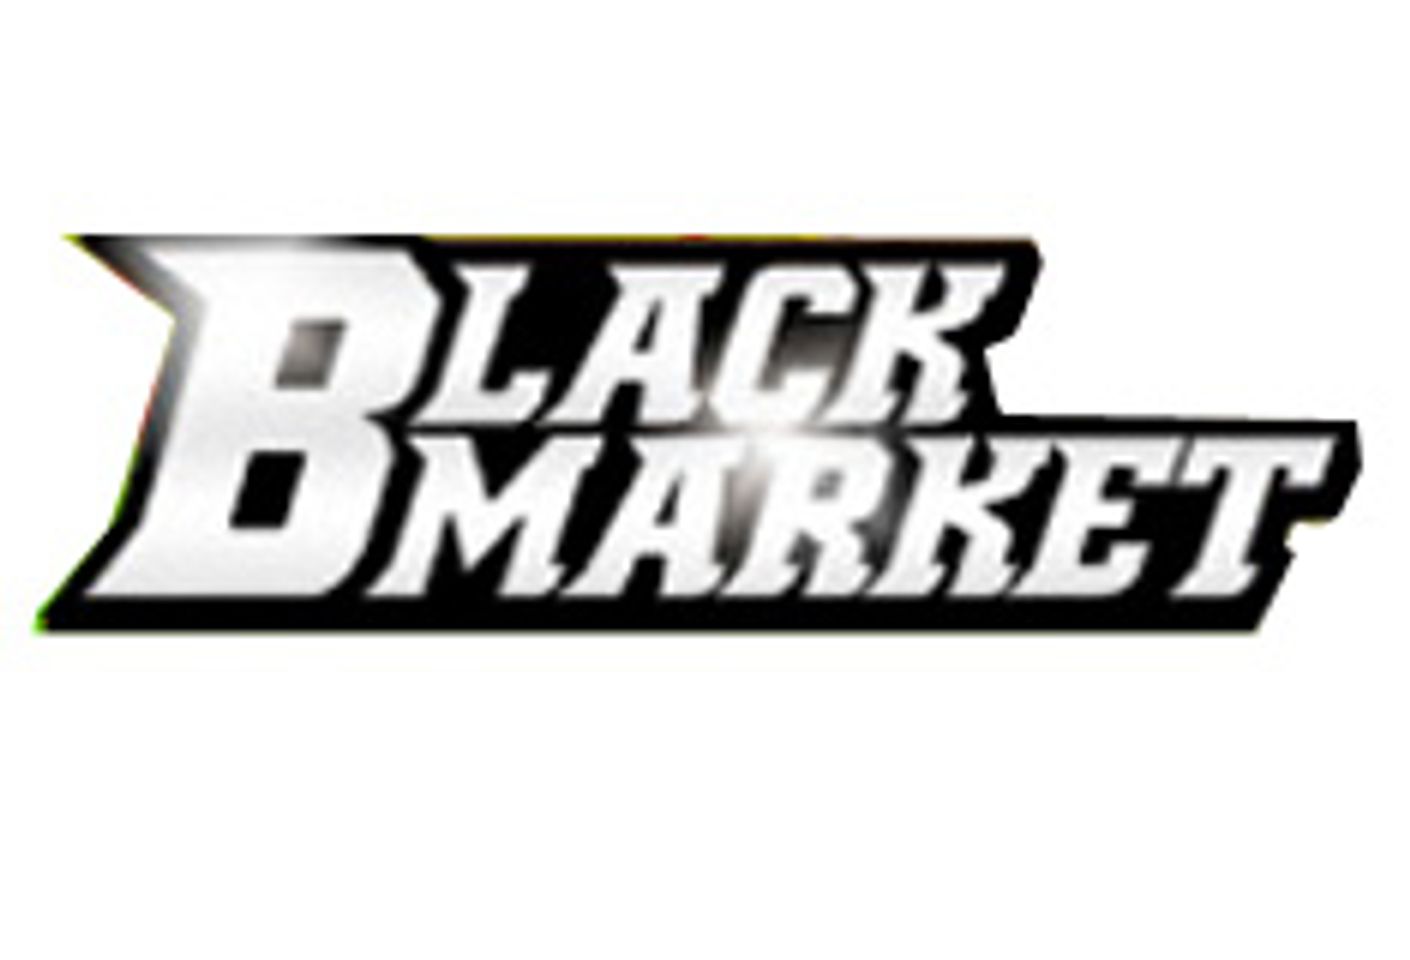 New Black Market Interracial Series Debuts